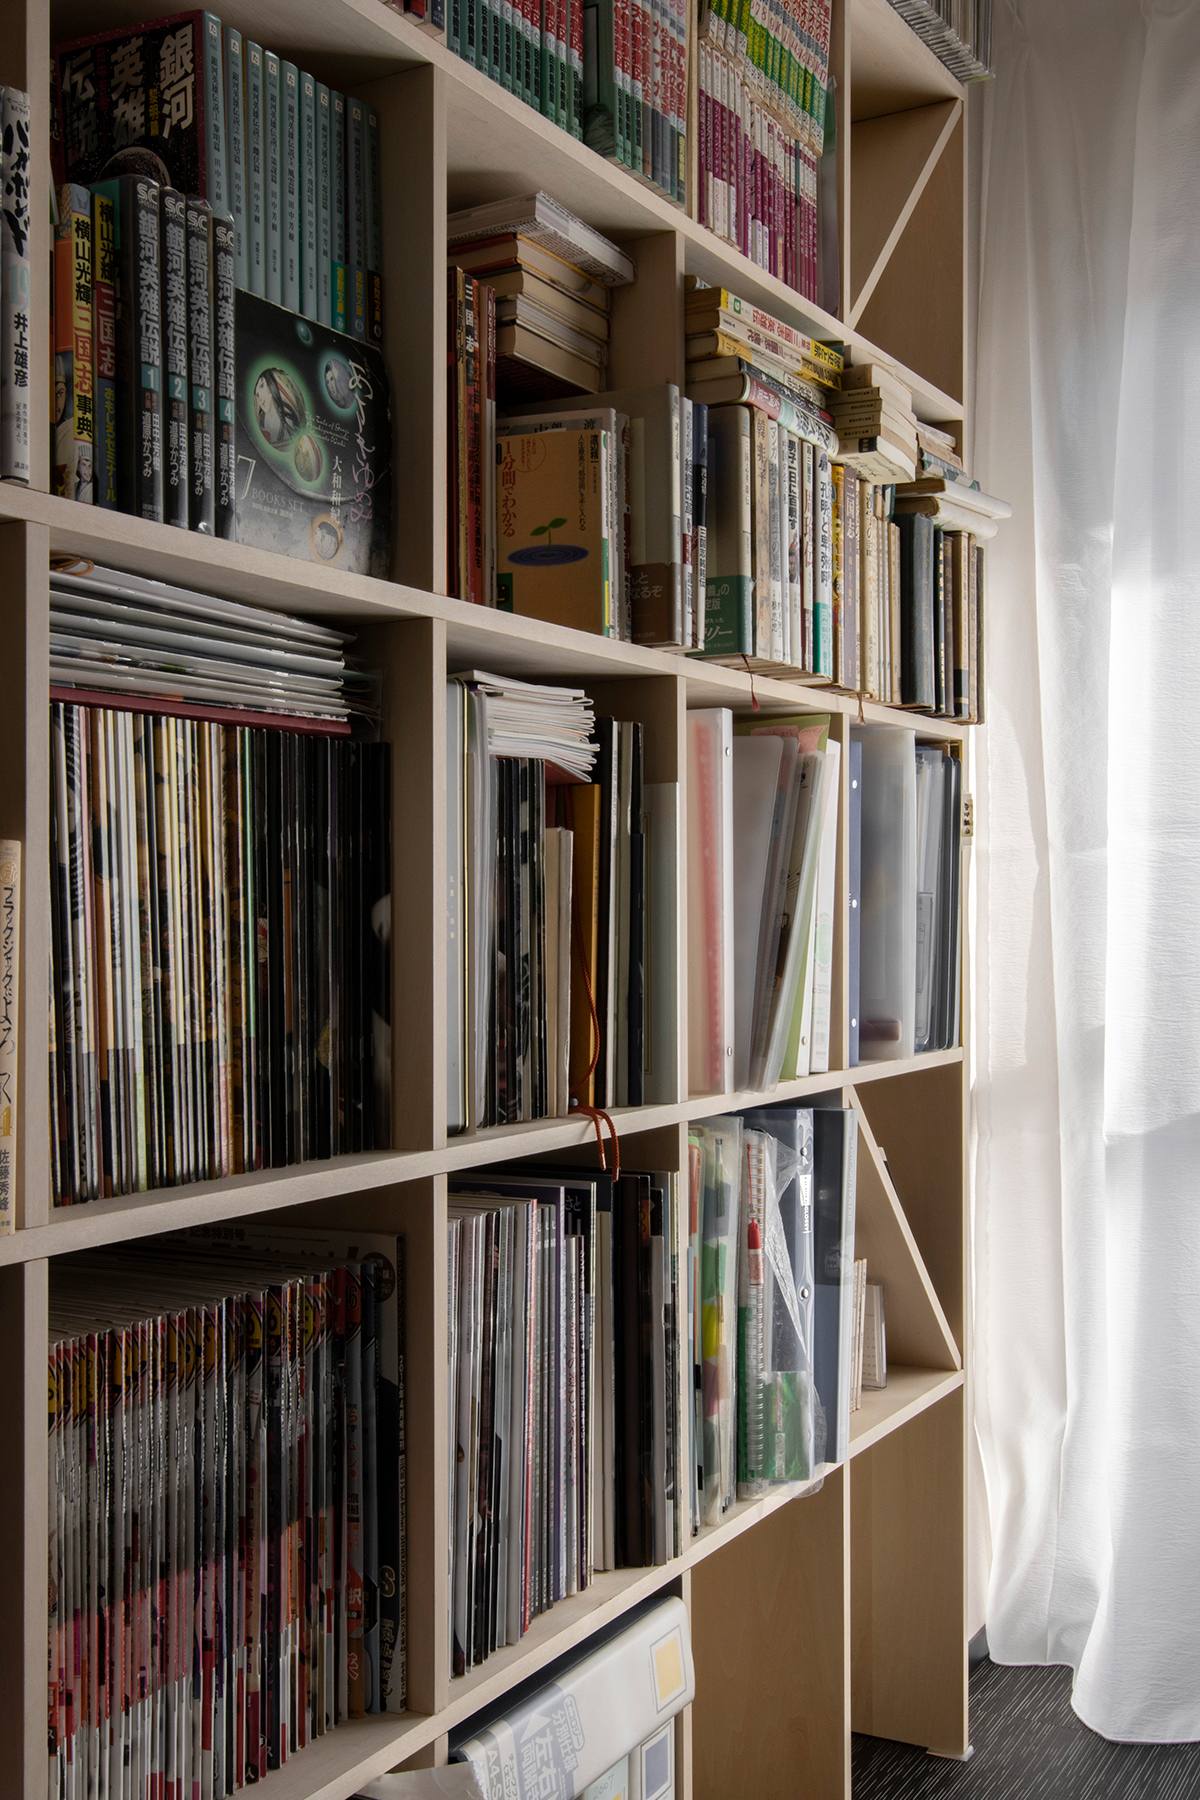 本棚に合わせて生活空間をリフォーム
本をぎっしり